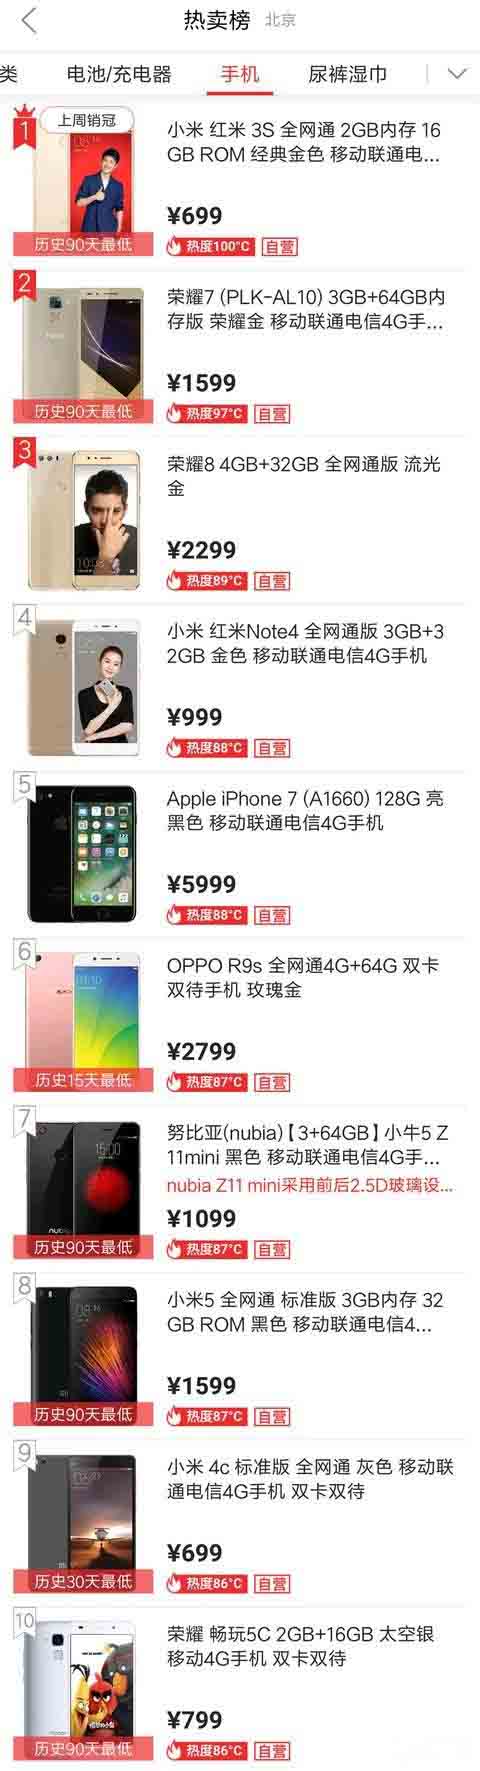 京东双11热销手机Top10速排行榜:小米/苹果领跑